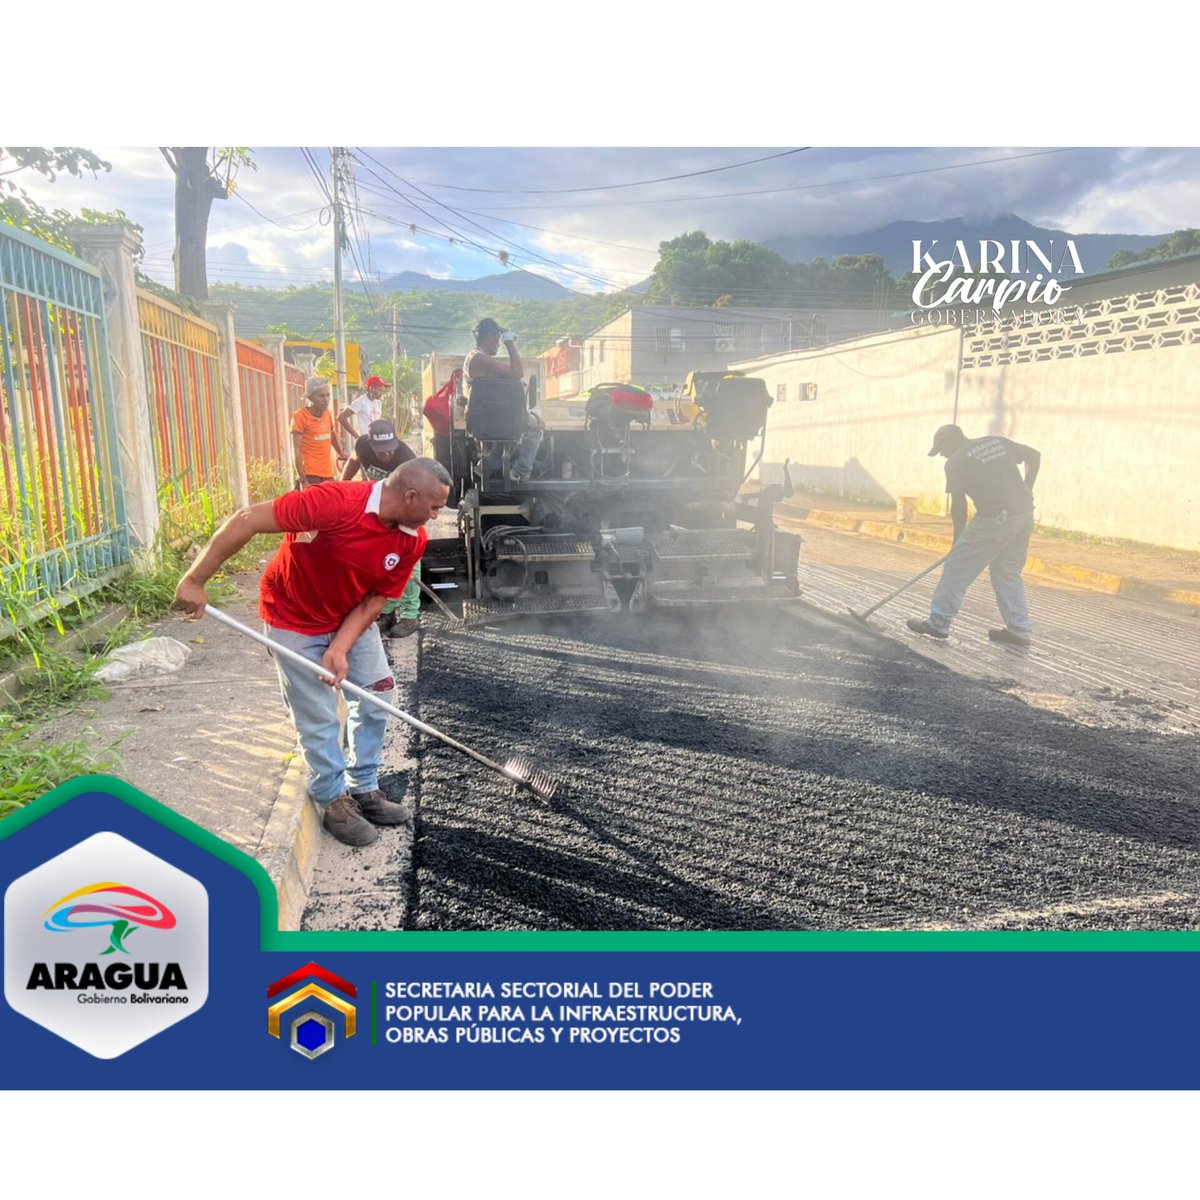 #AraguaReverdece Desde el Sector La Candelaria del municipio #MBI del estado #Aragua continúan los trabajos de asfaltado, gracias al @GobiernoAragua_ y a la Gobernadora Karina Carpio, quien trabaja sin descanso por el pueblo aragüeño. @Soykarinacarpio @viasdearaguas